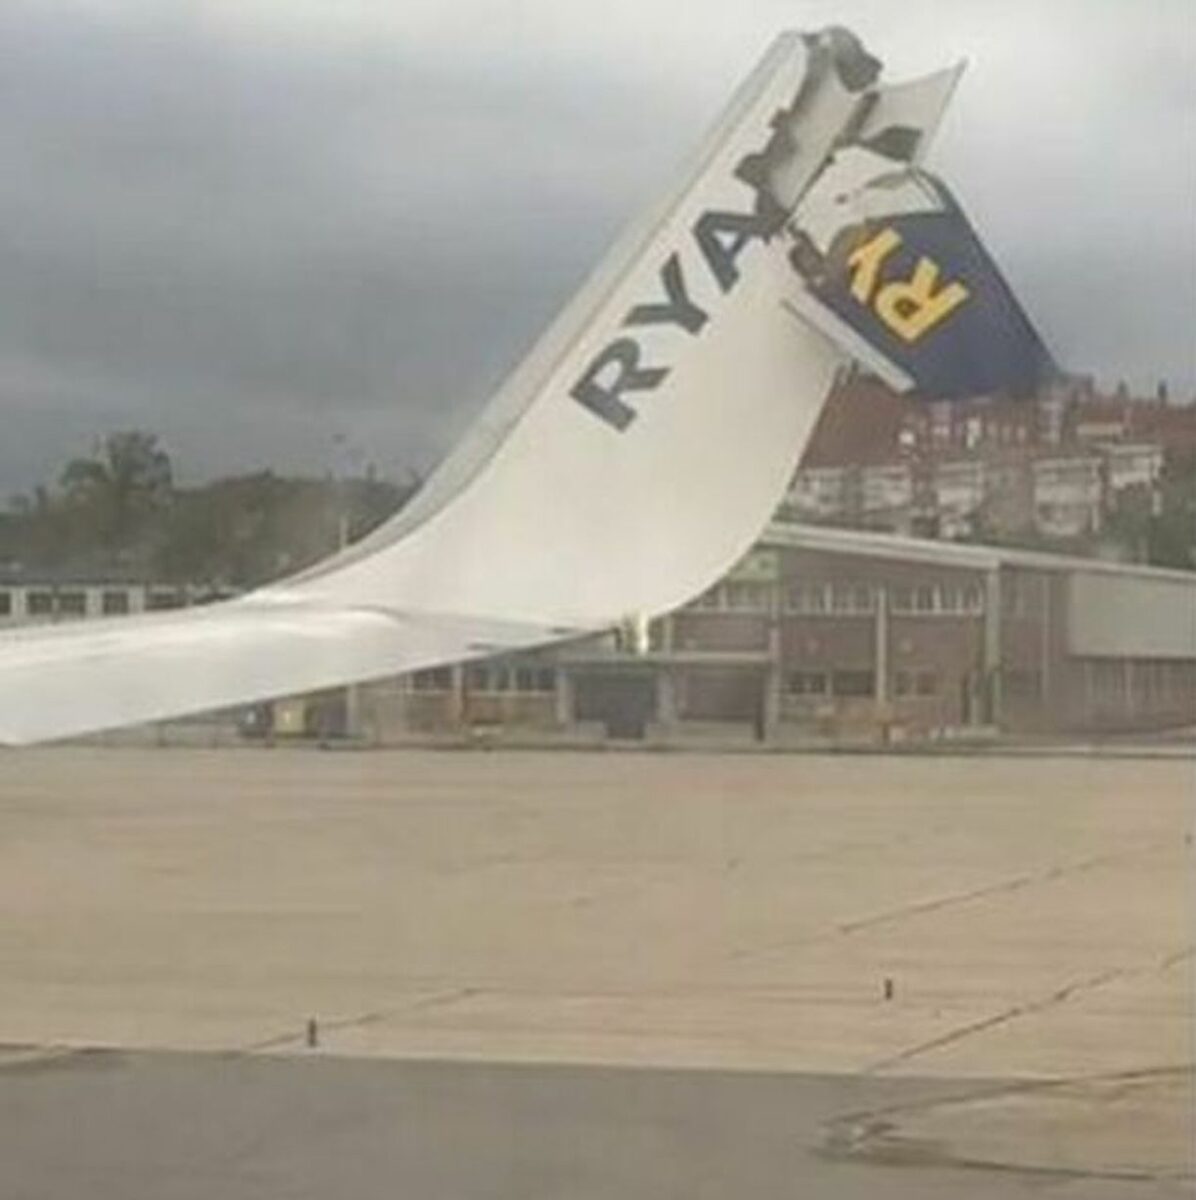 Collisione tra due aerei sulla pista di decollo